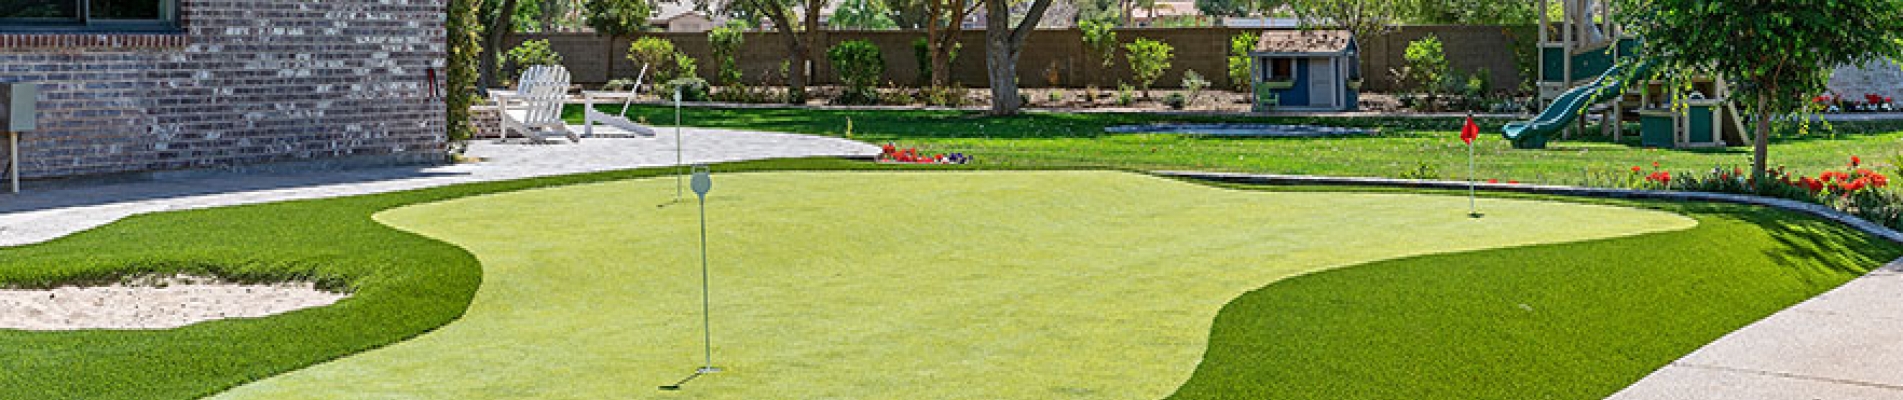 Yapay Çim (Putting Green) ile Golf Sahası Yapımı